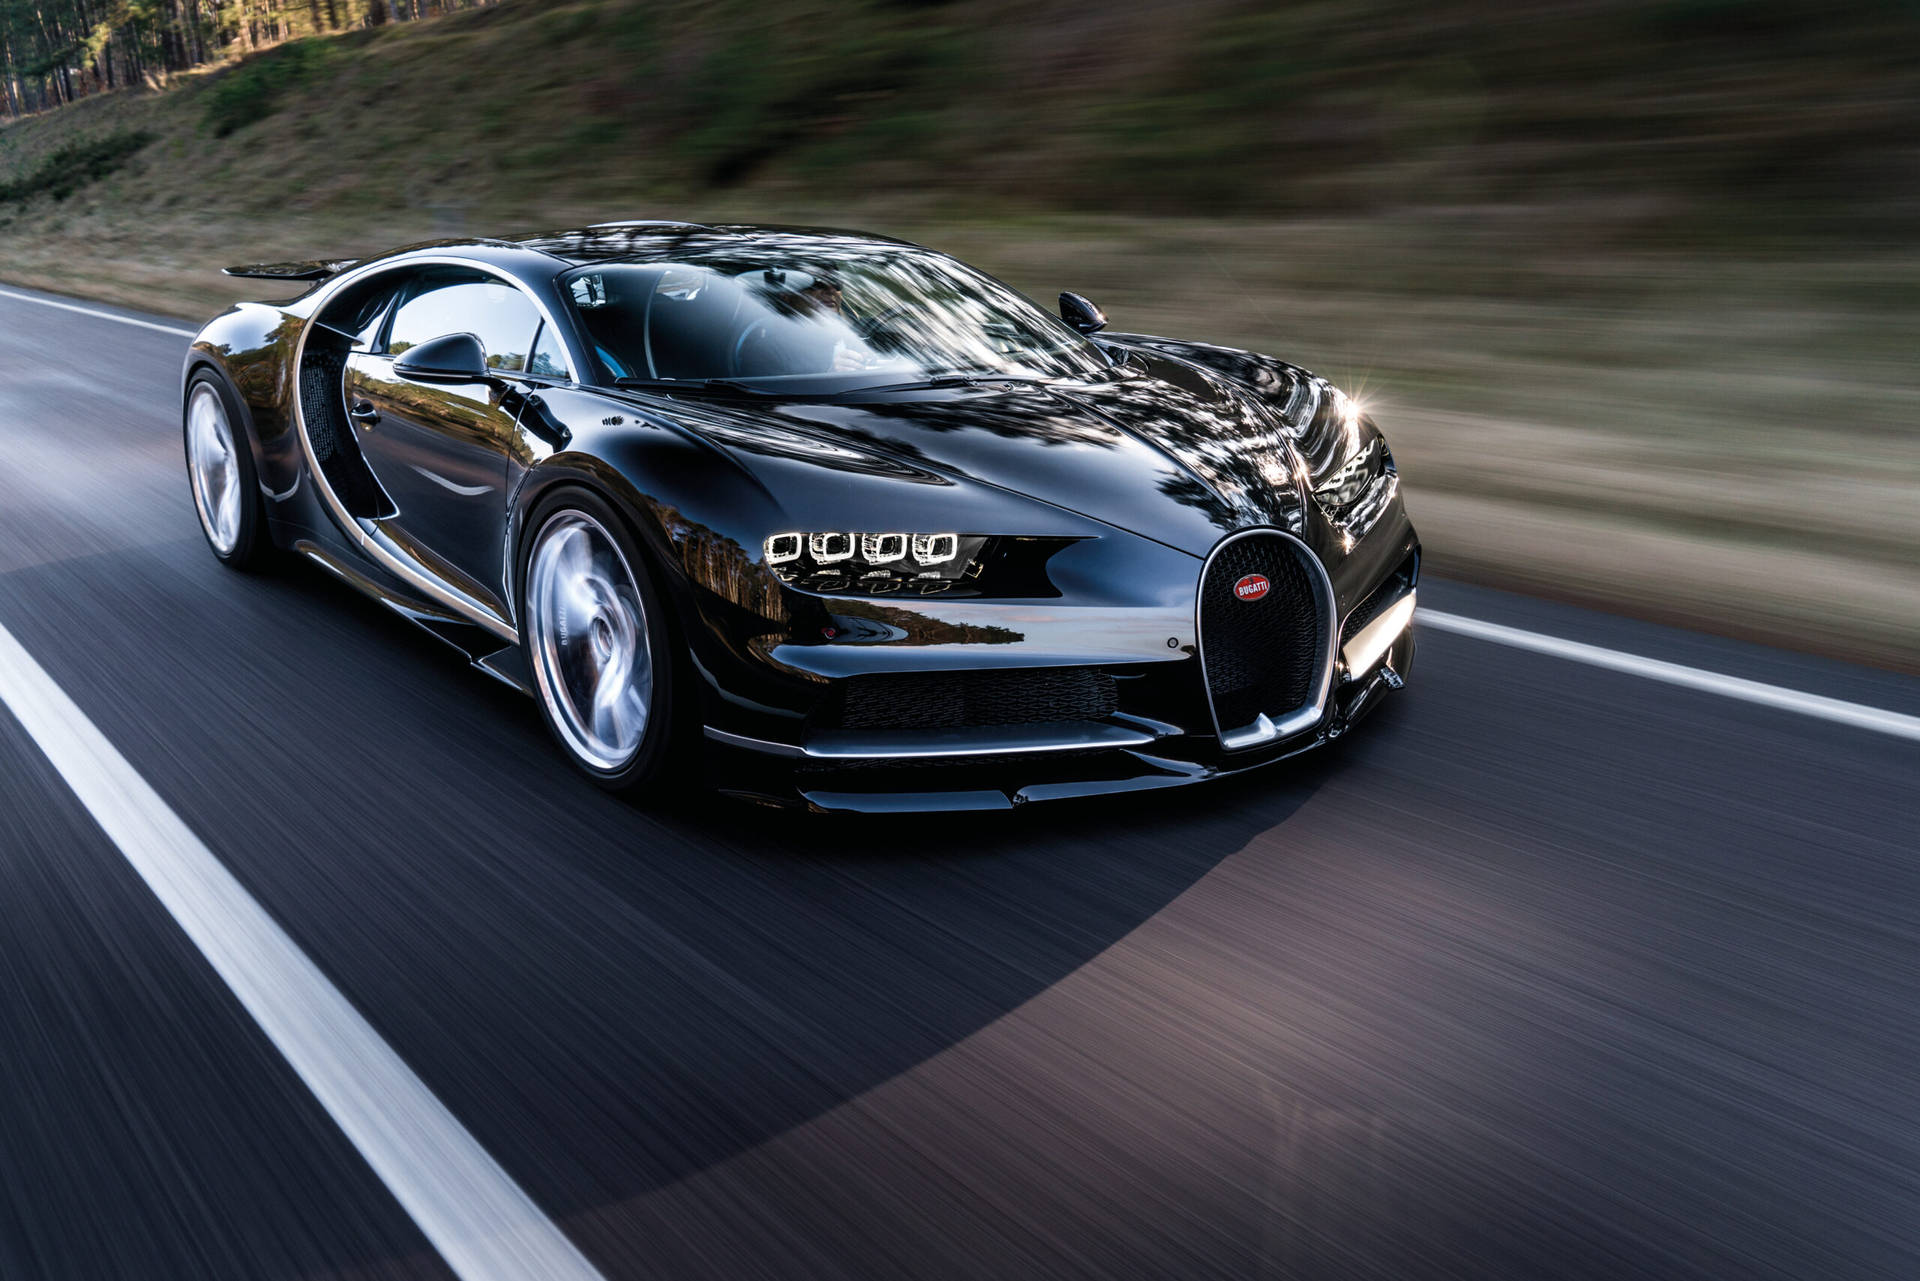 Speeding Cool Bugatti On Road Wallpaper